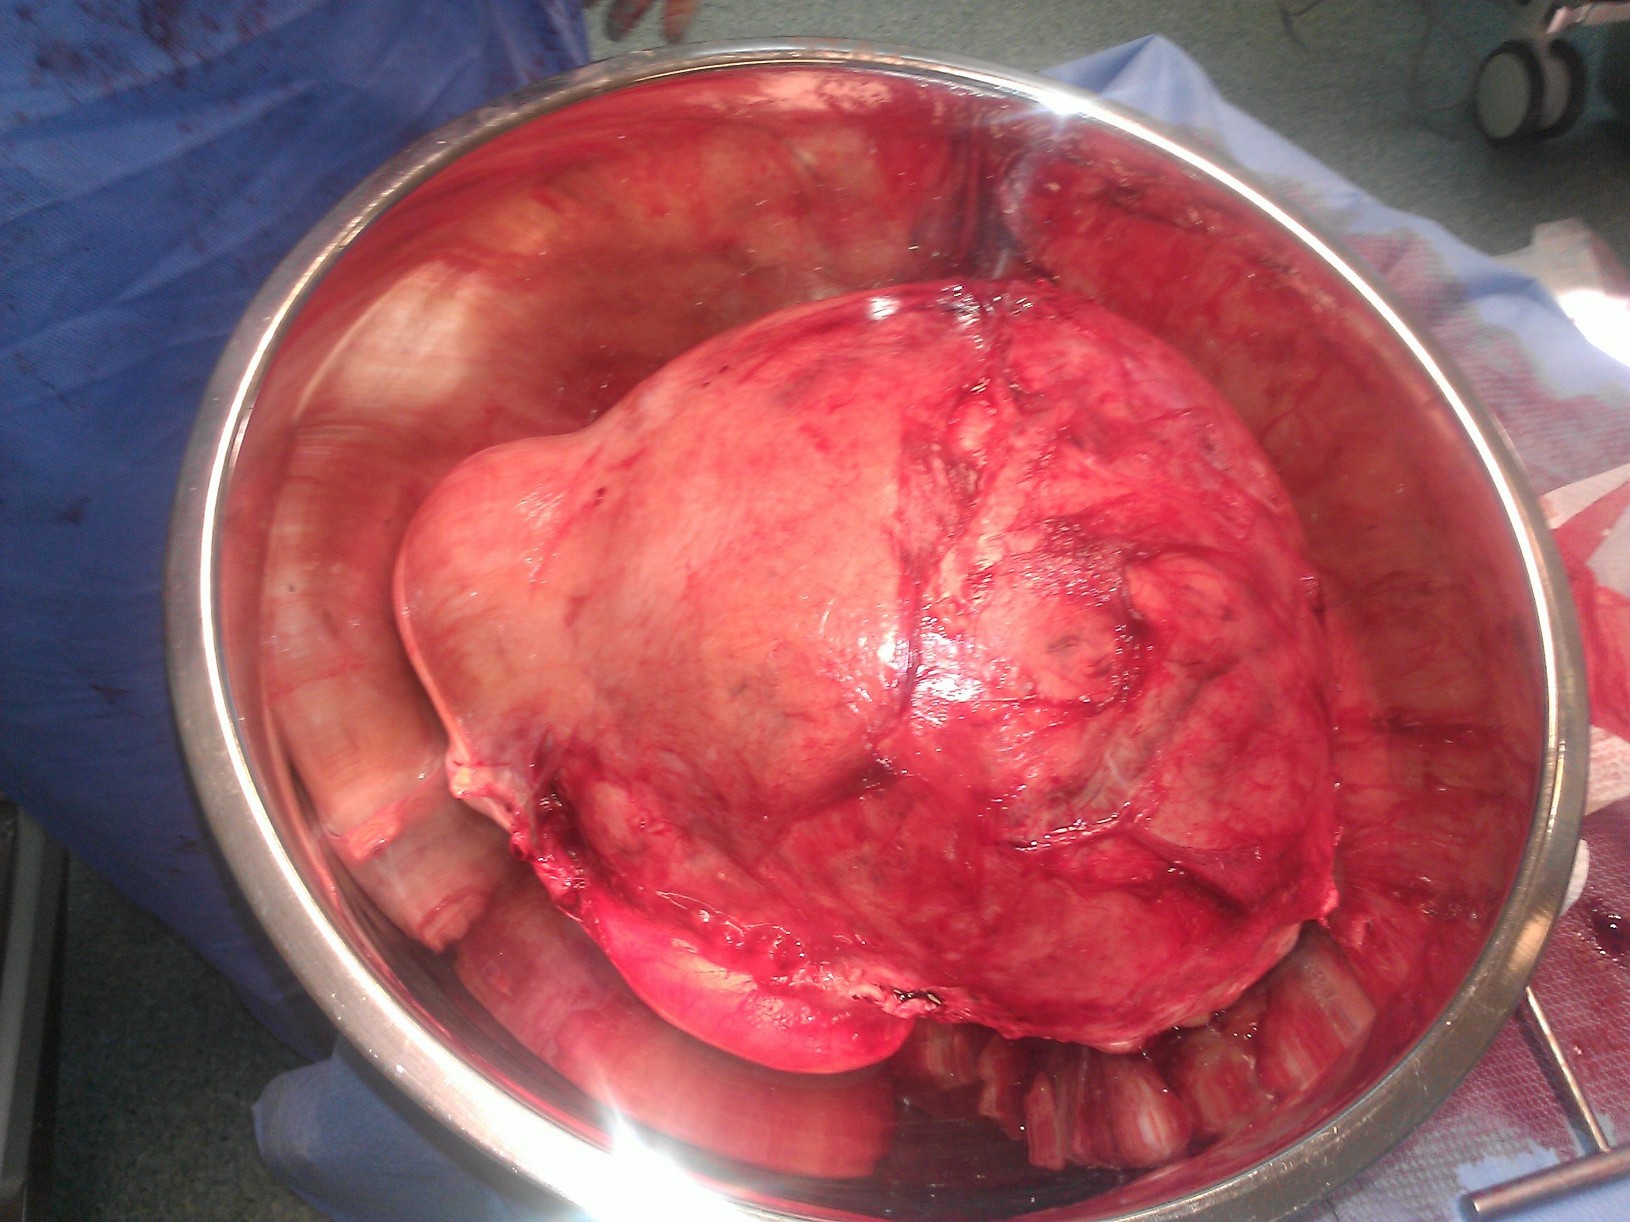 Enorme utero miomatoso que peso 5 Kgs y medio